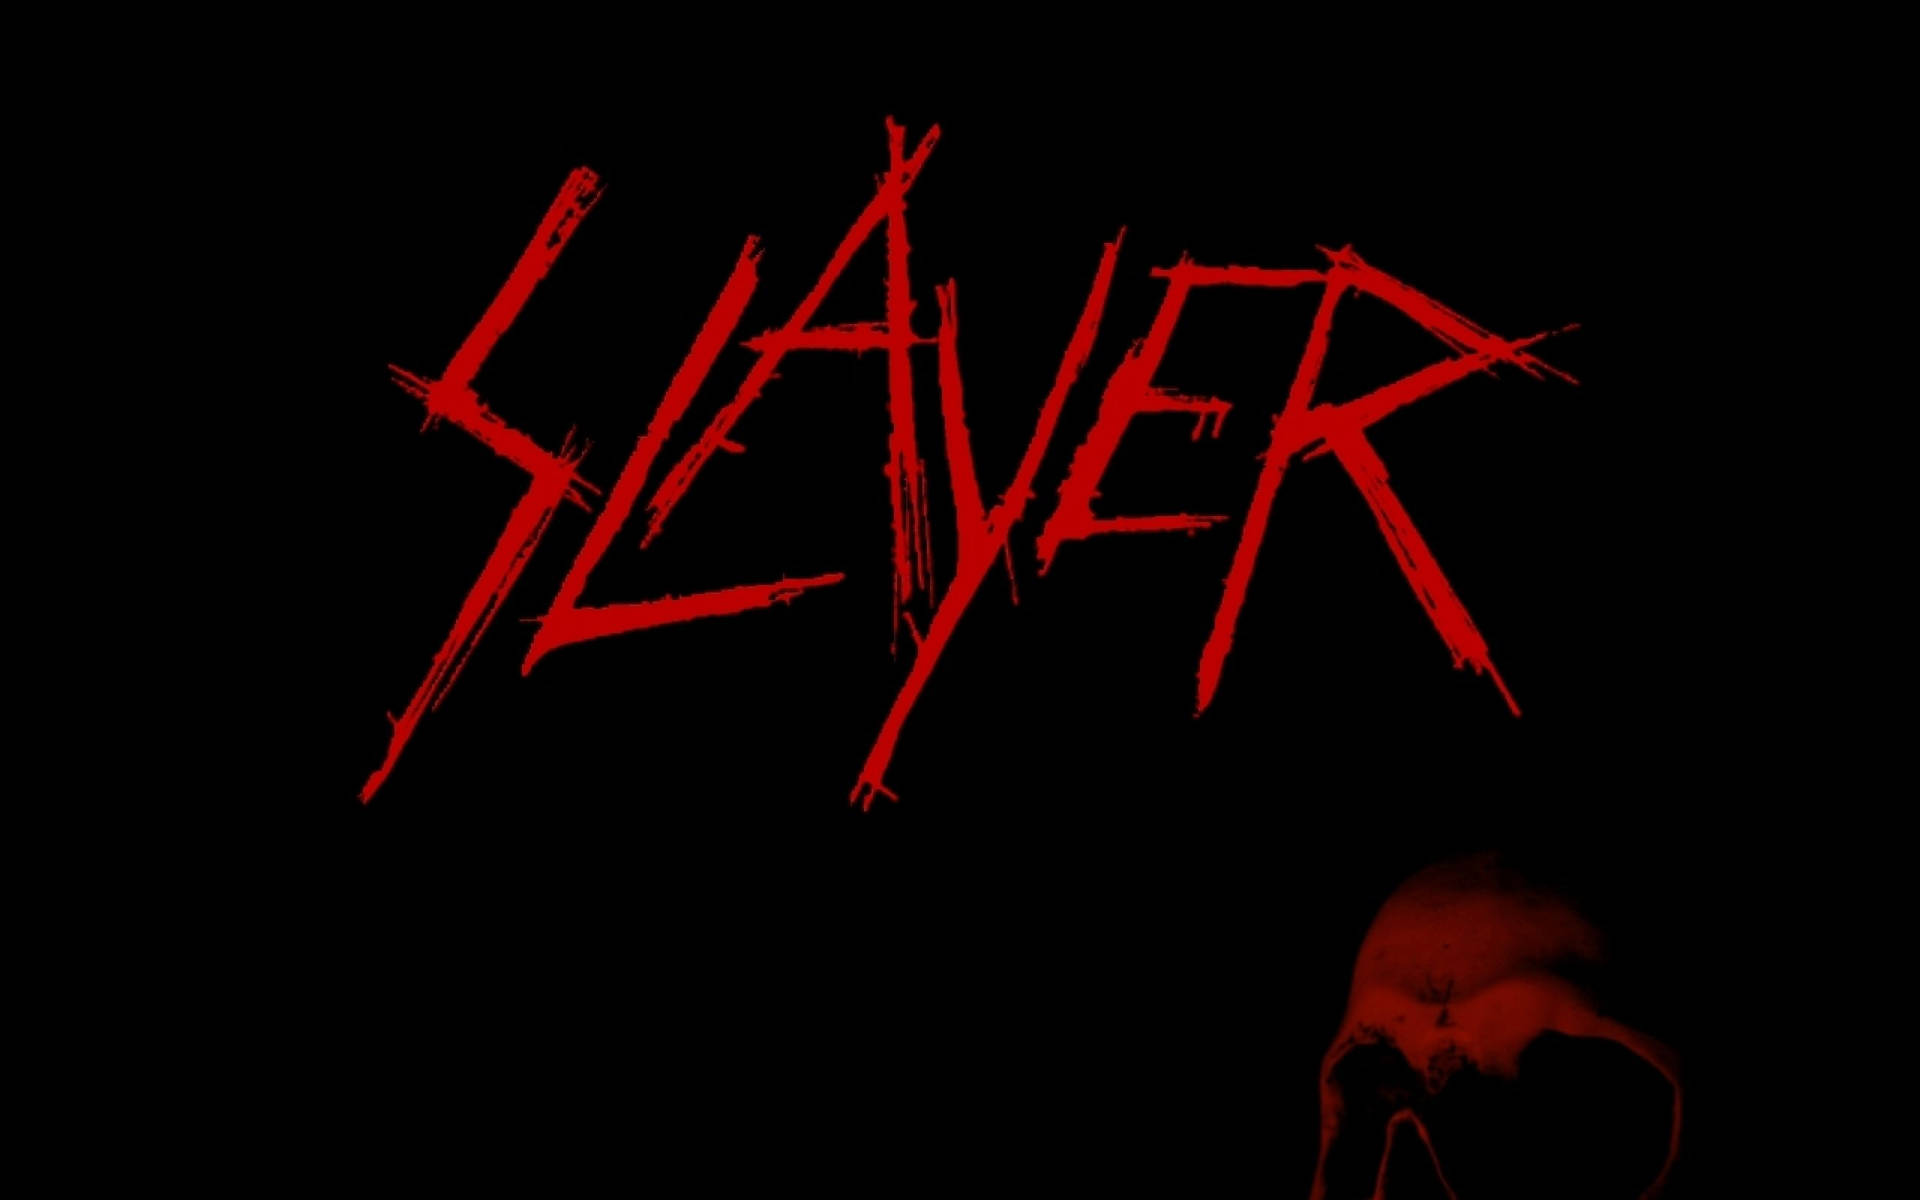 Red Slayer Skull Logo Wallpaper